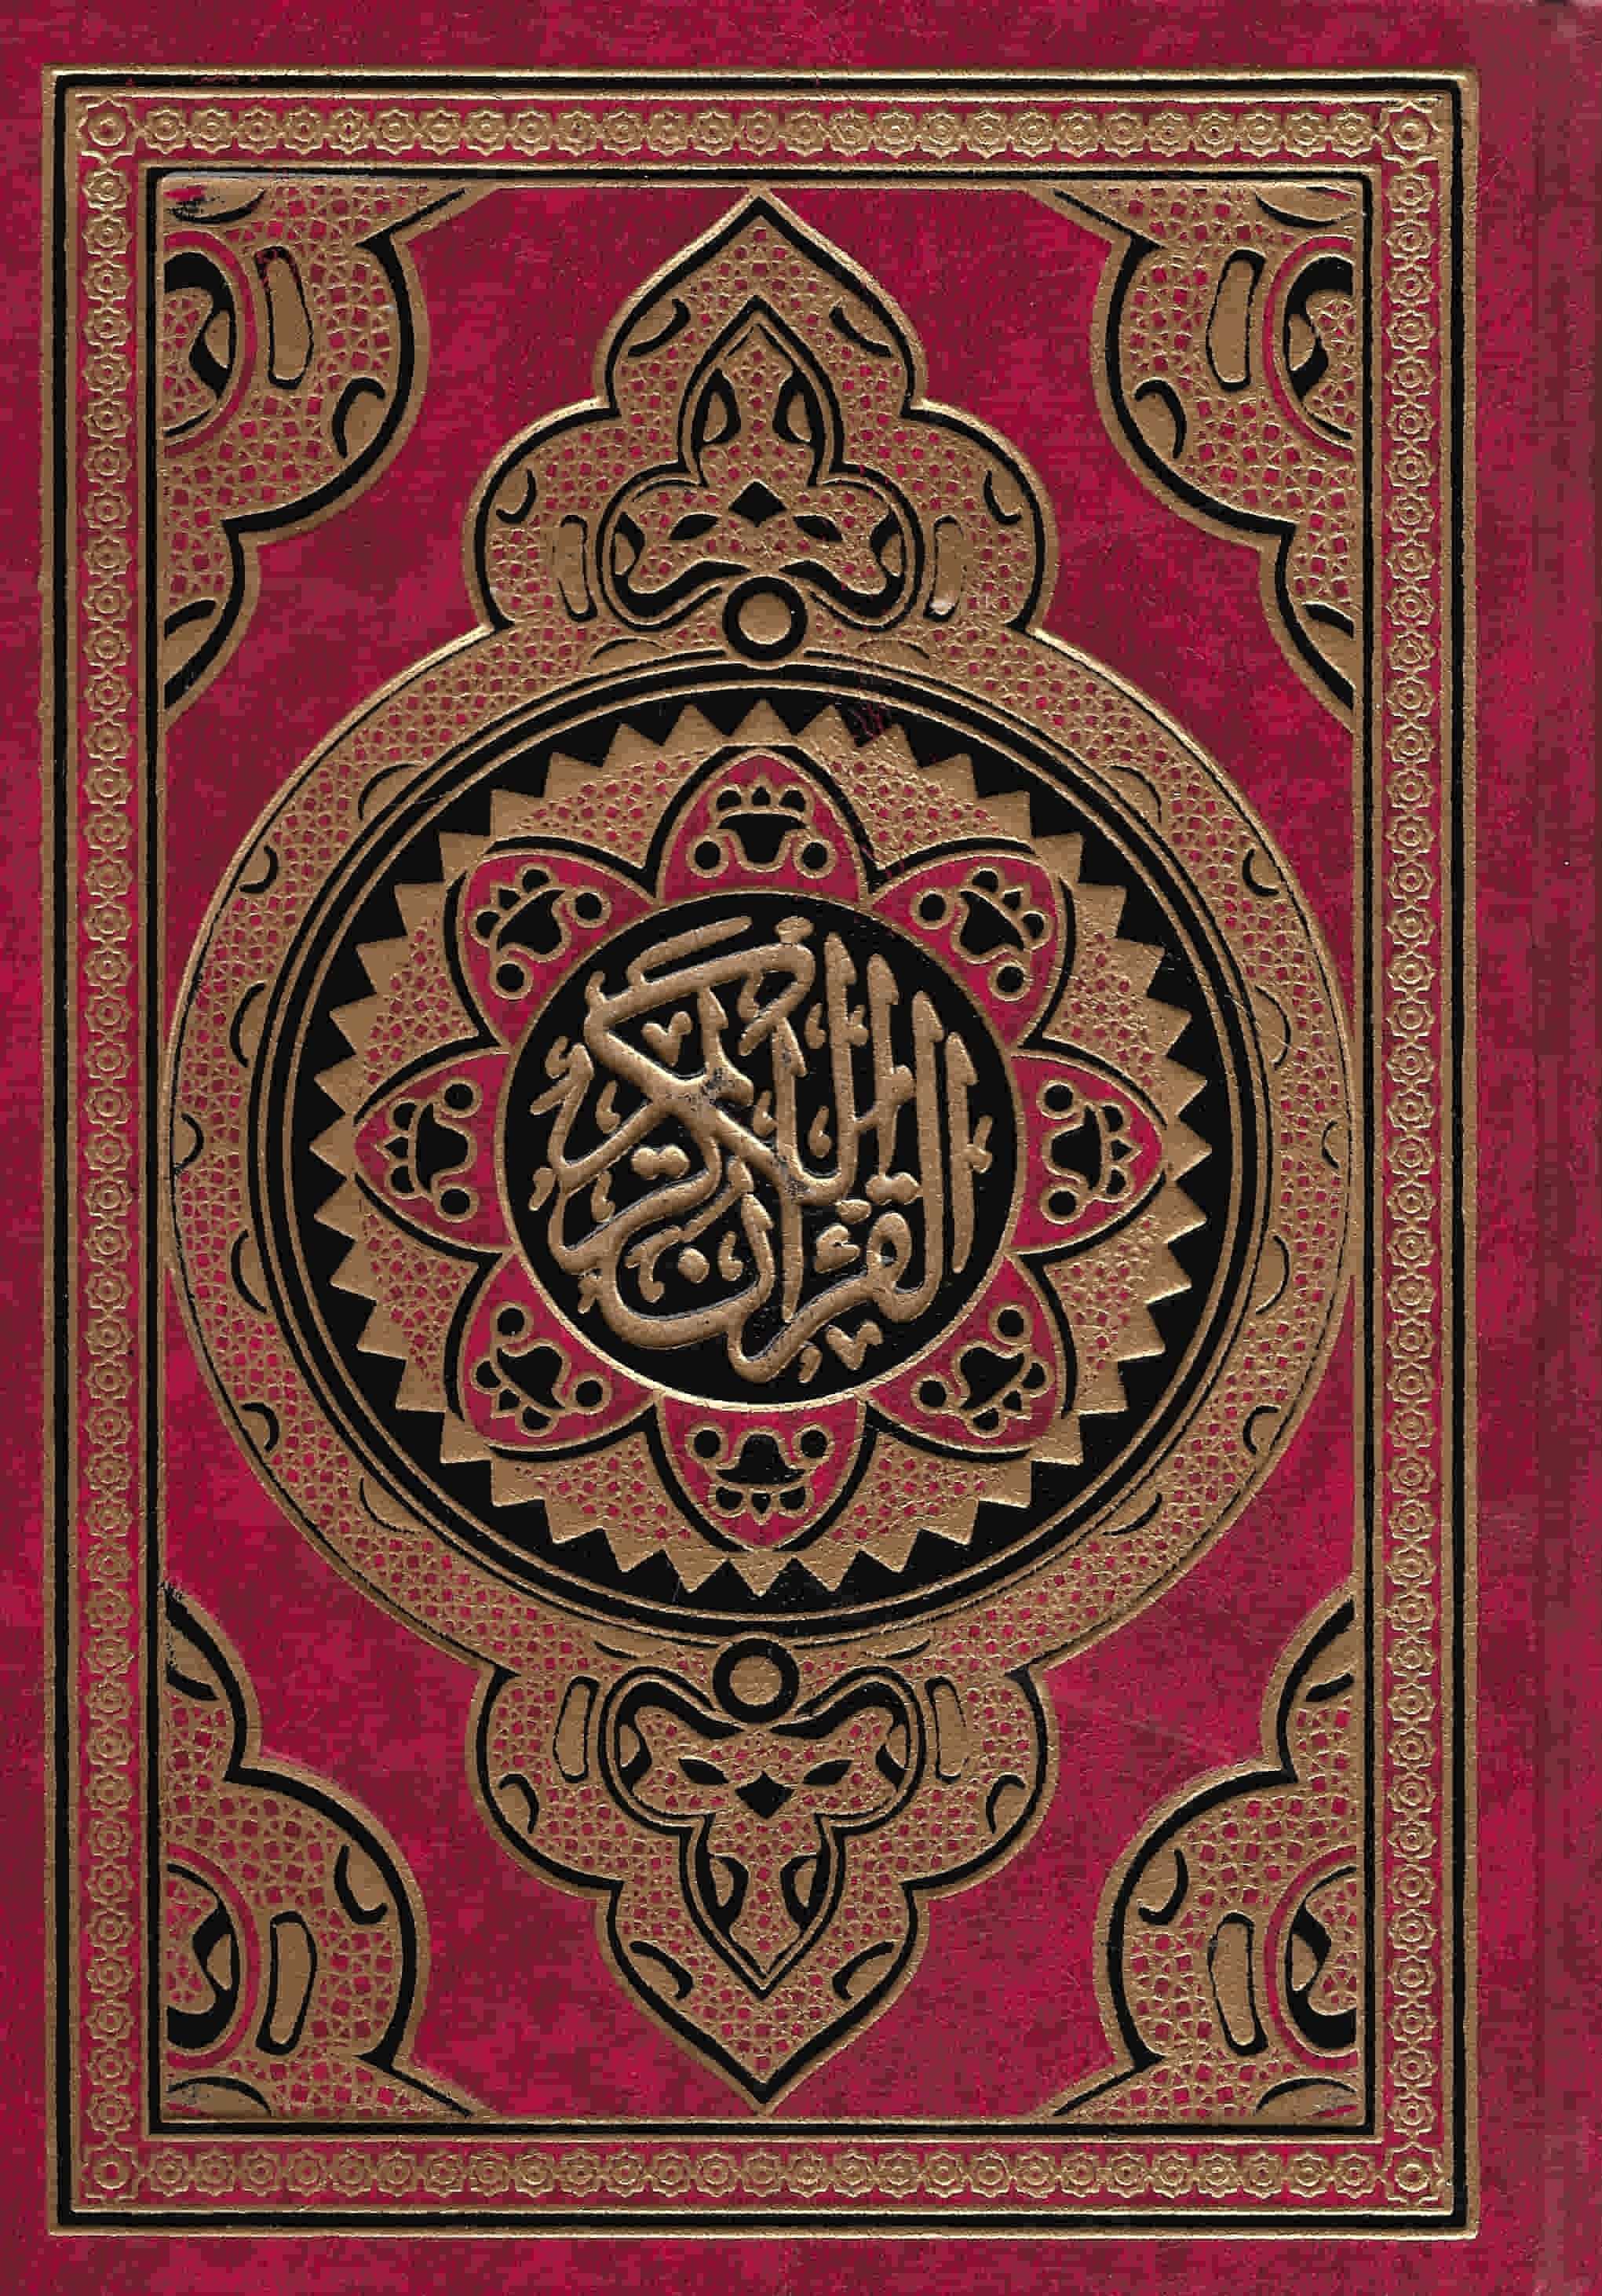 مصحف حريري بركوين - القرآن الكريم بالرسم العثماني كتب إسلامية السحار للطباعة غلاف أحمر 17*24